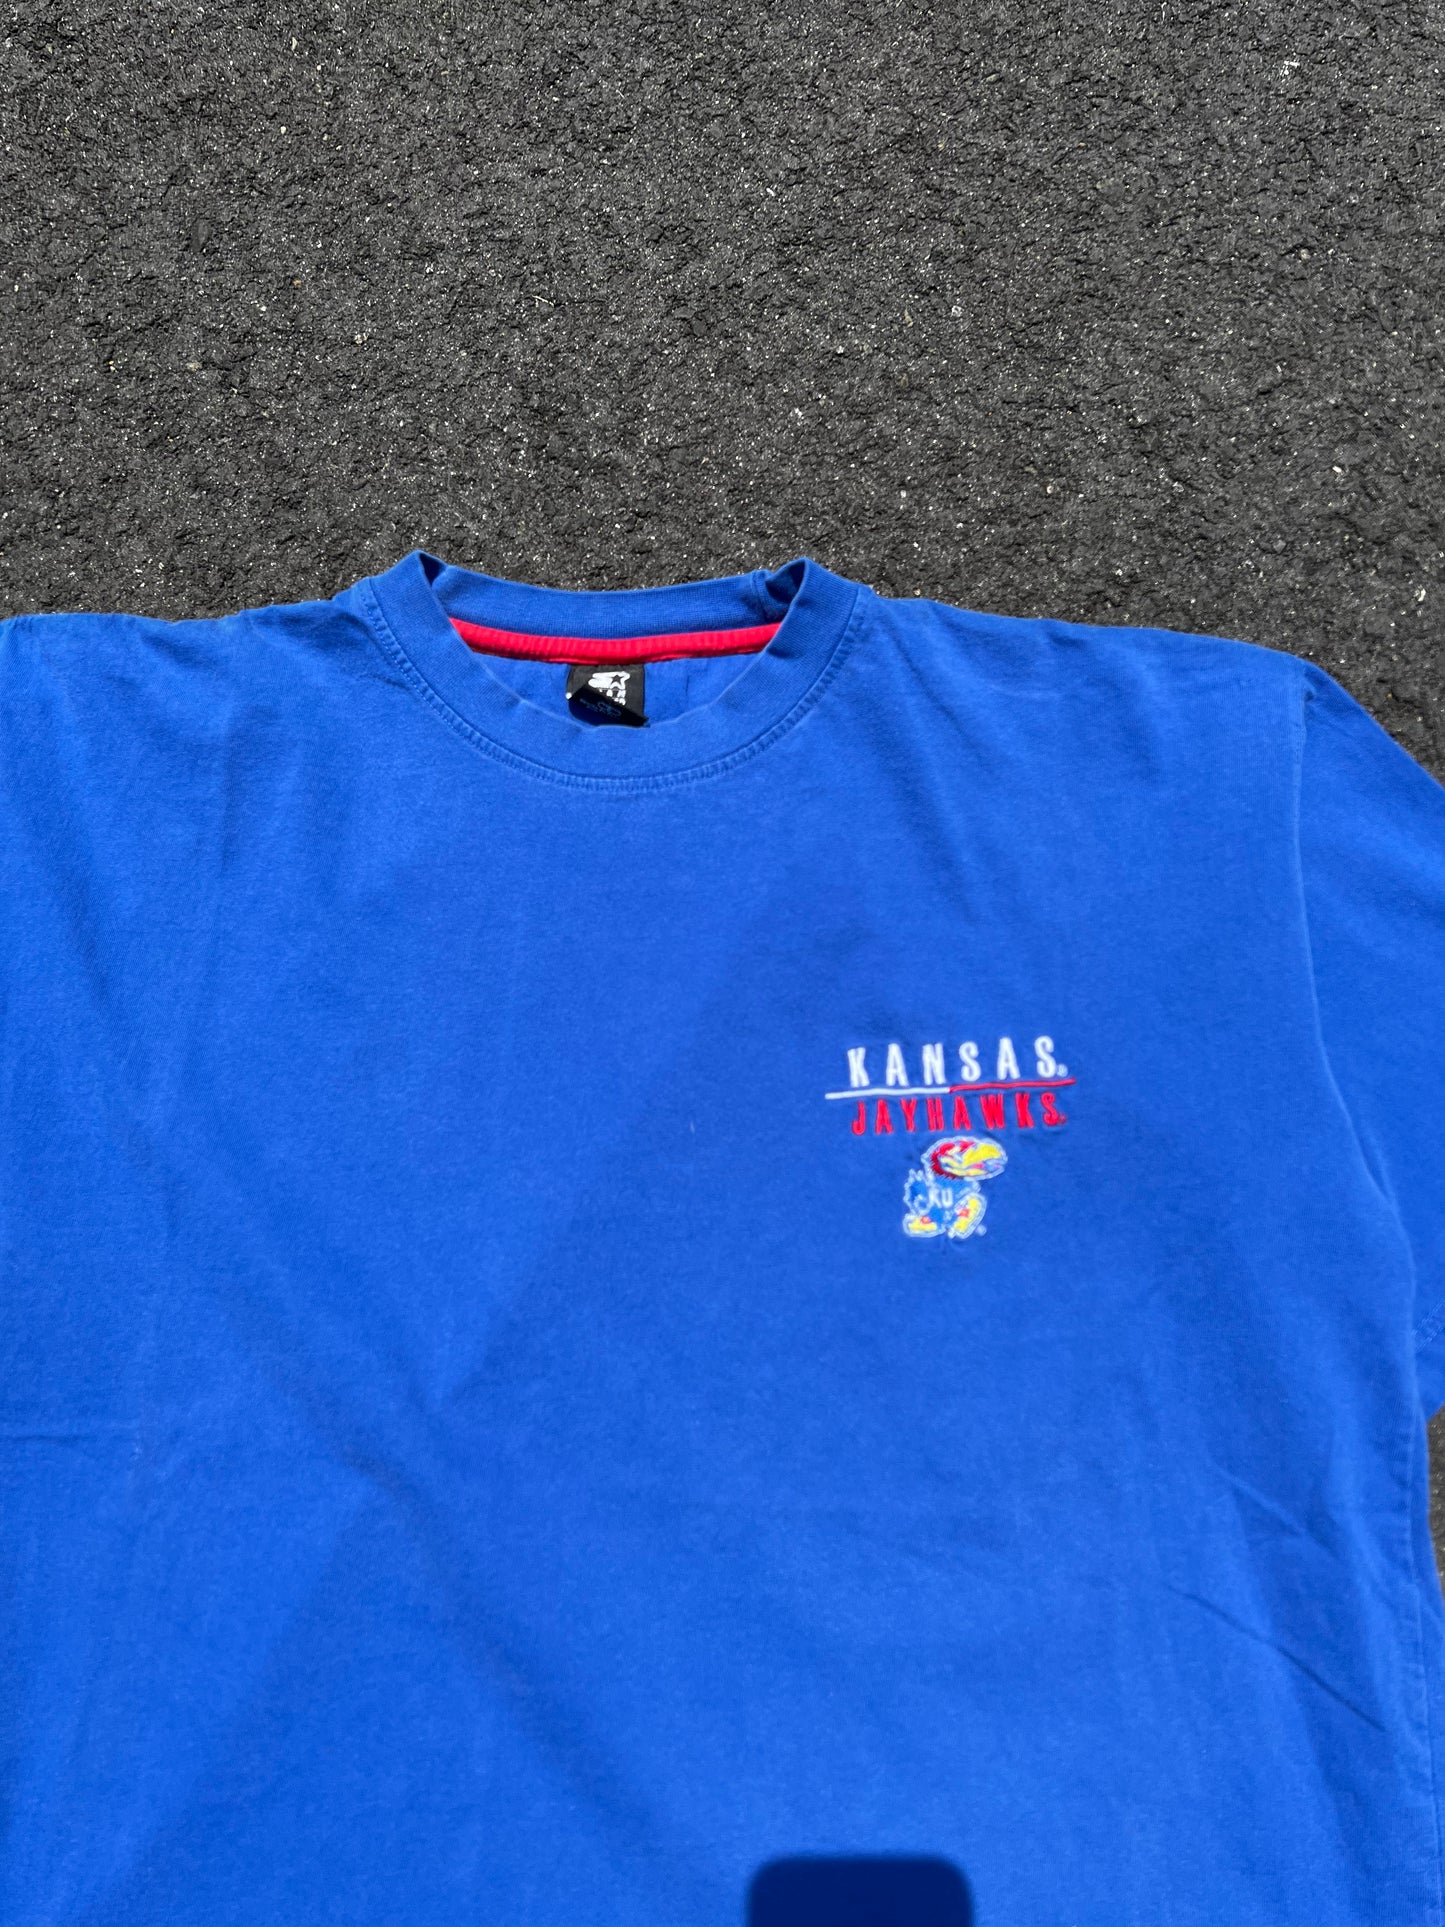 90s Kansas Jayhawks T Shirt